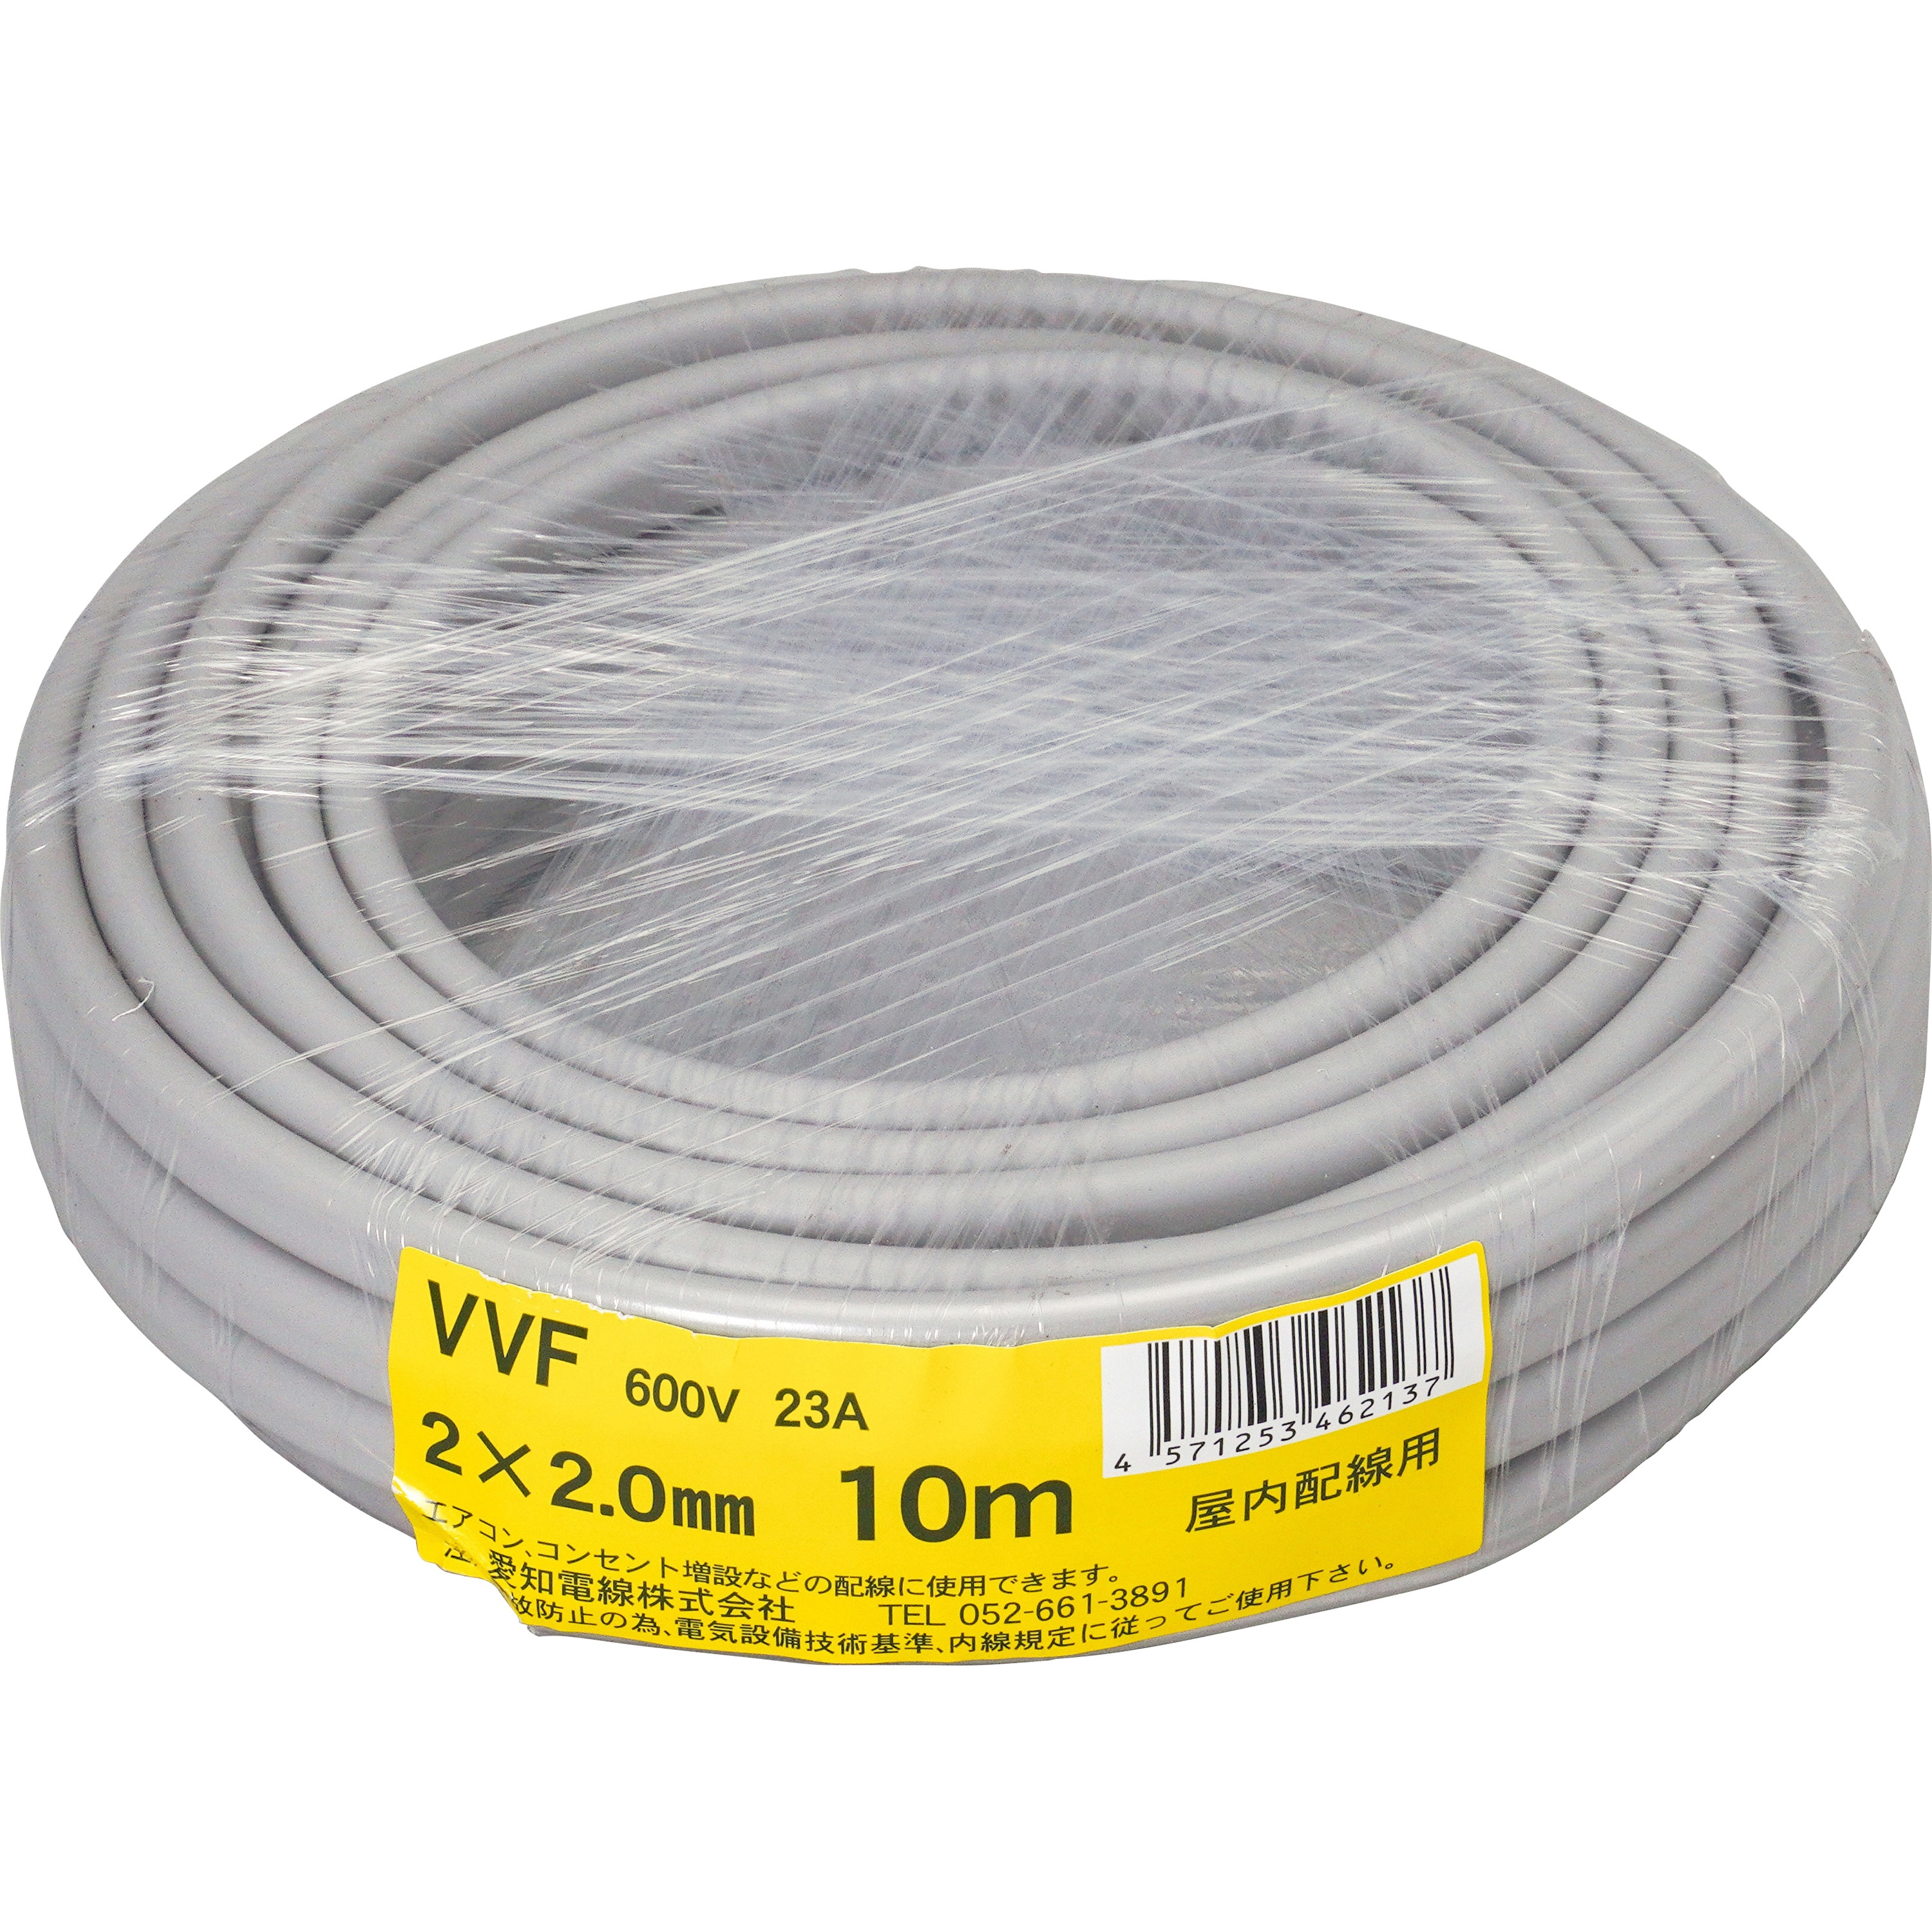 捧呈 愛知電線 VVF ケーブル2芯 2.0mm 10m 灰色 VVF2×2.0M10